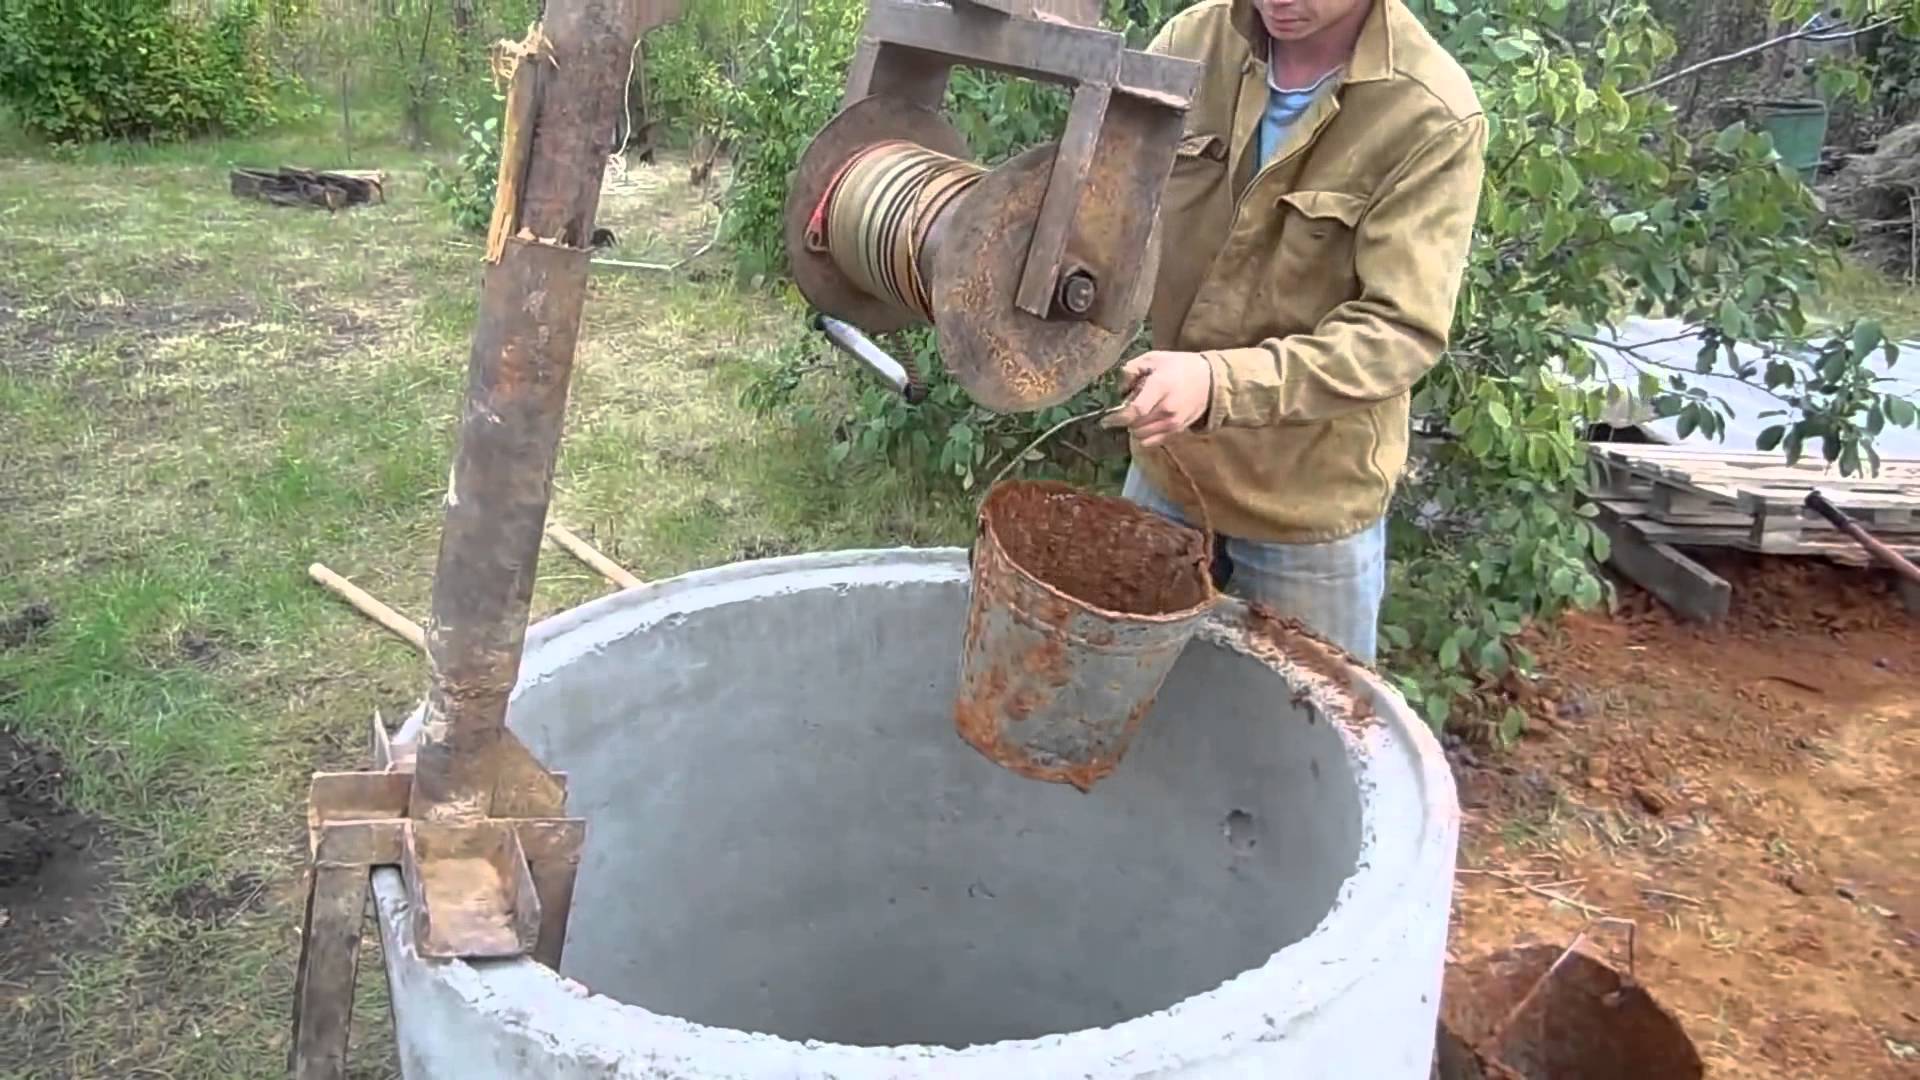 Копка колодцев своими руками: как правильно сделать на даче самому устройство для питьевой воды